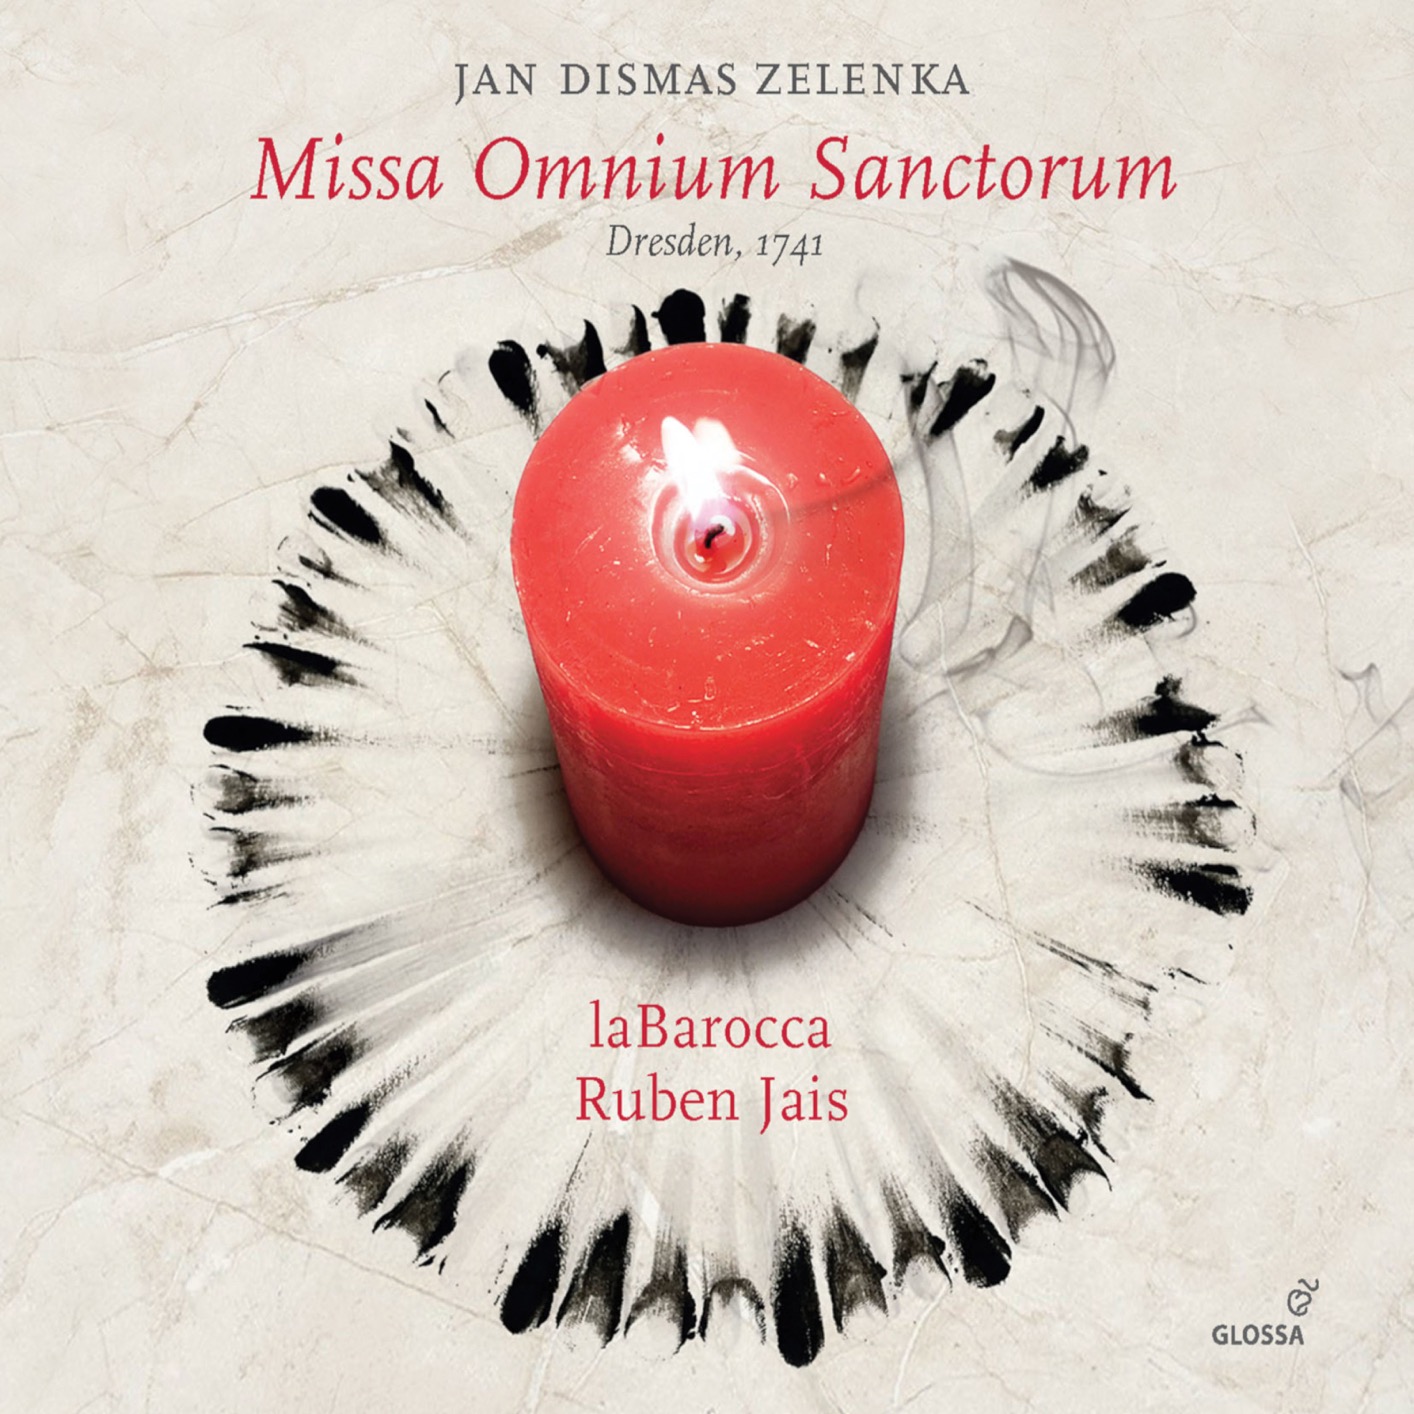 laBarocca & Ruben Jais - Missa omnium sanctorum, ZWV 21 (2019) [FLAC 24bit/48kHz]